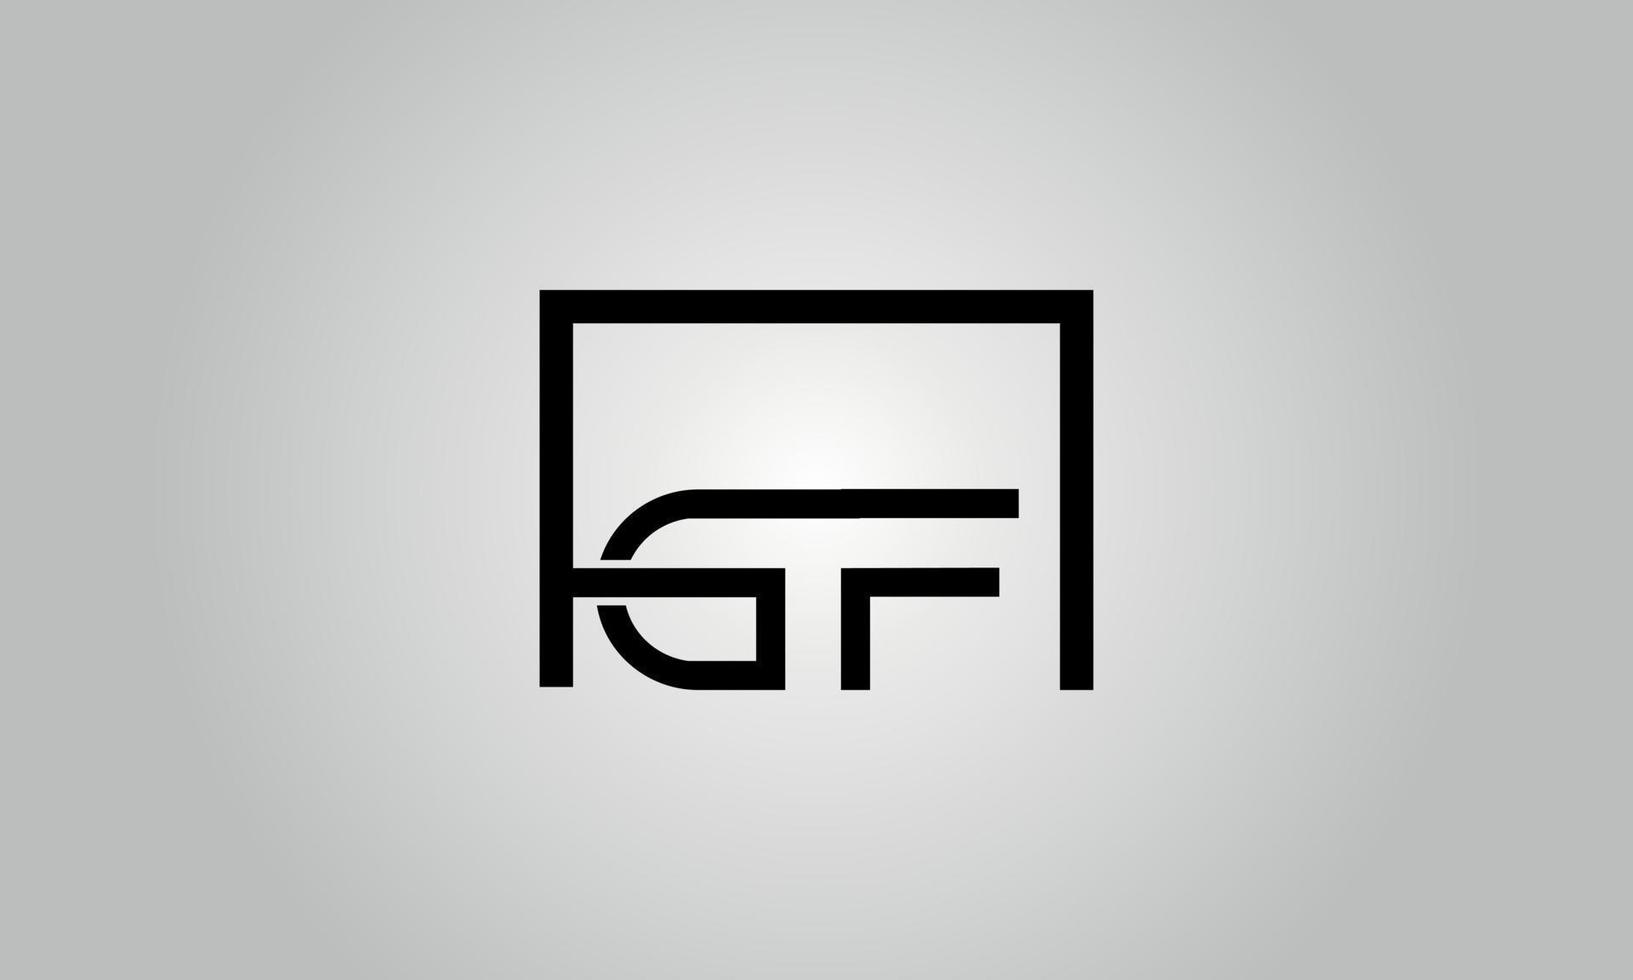 création de logo lettre gf. logo gf avec forme carrée dans le modèle de vecteur gratuit de vecteur de couleurs noires.